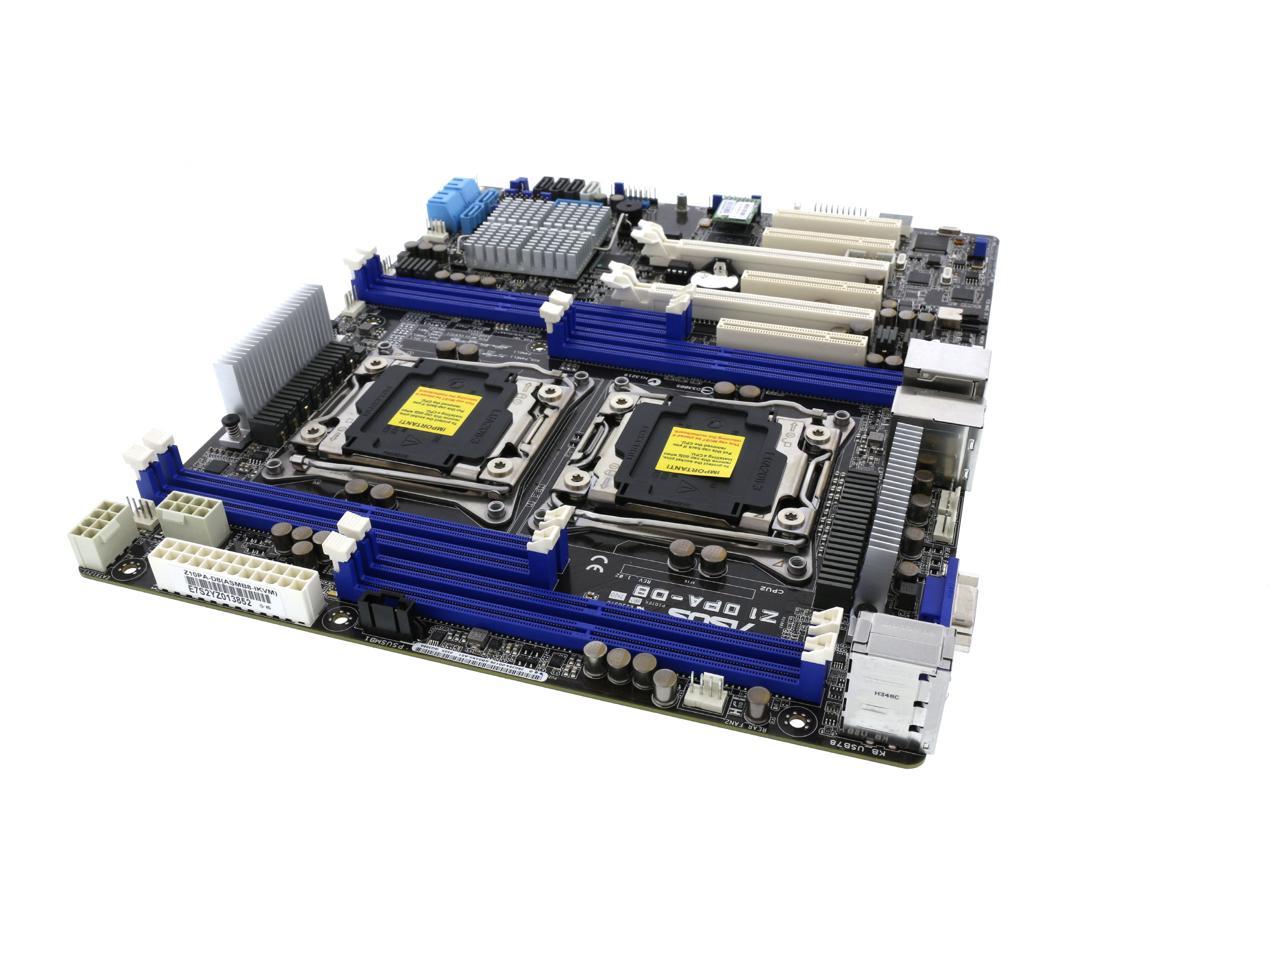 ASUS Z10PA-D8 ATX Server Motherboard Dual LGA 2011-3